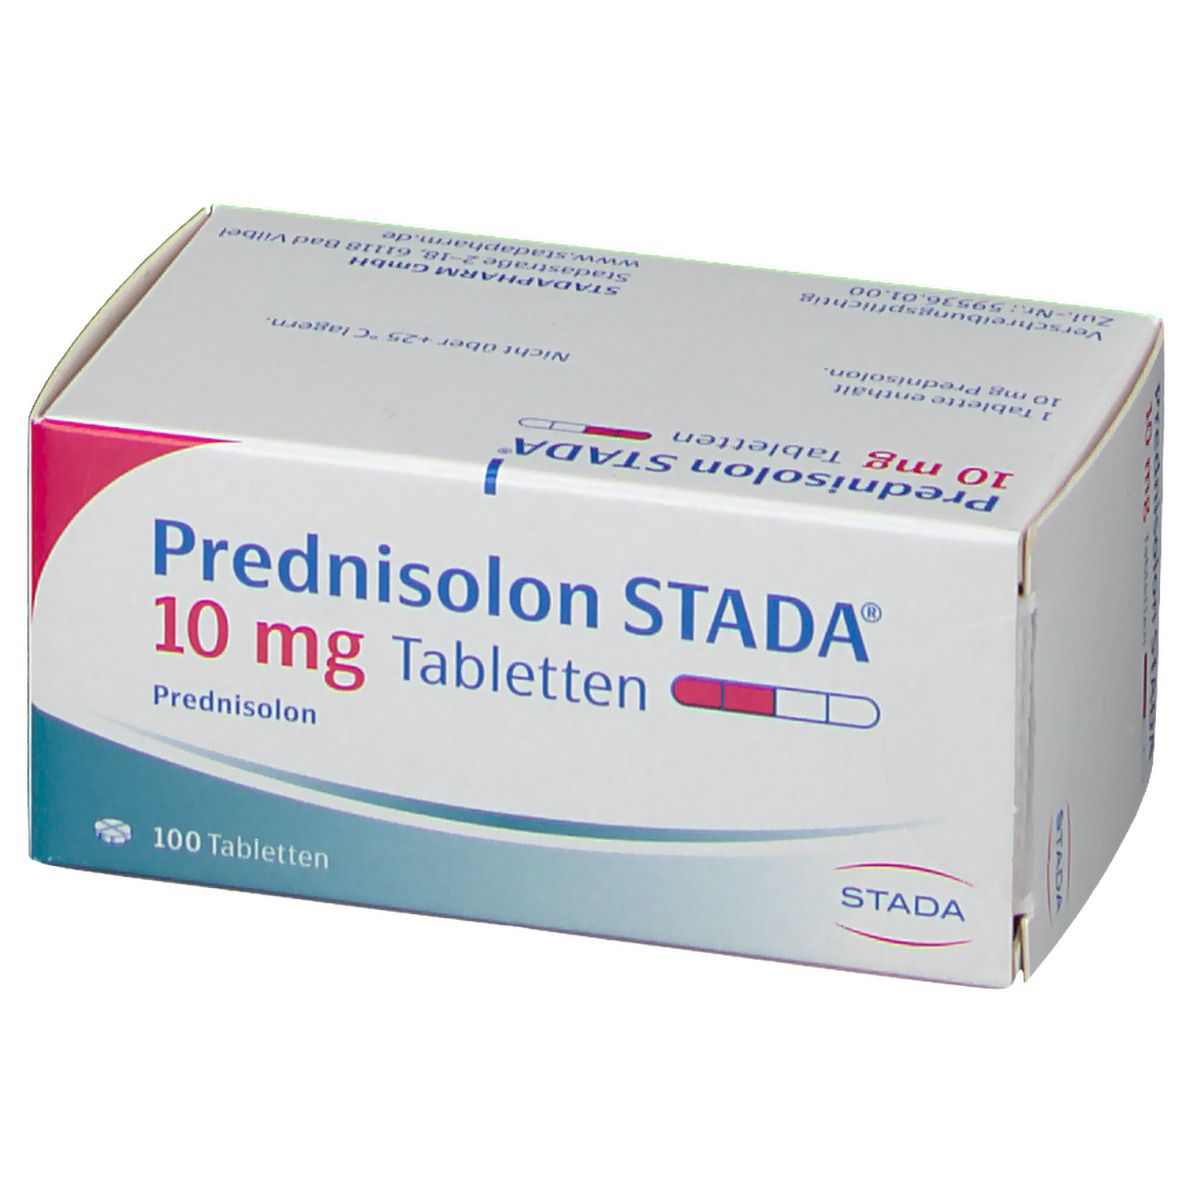 Prednisolon STADA® 10 mg